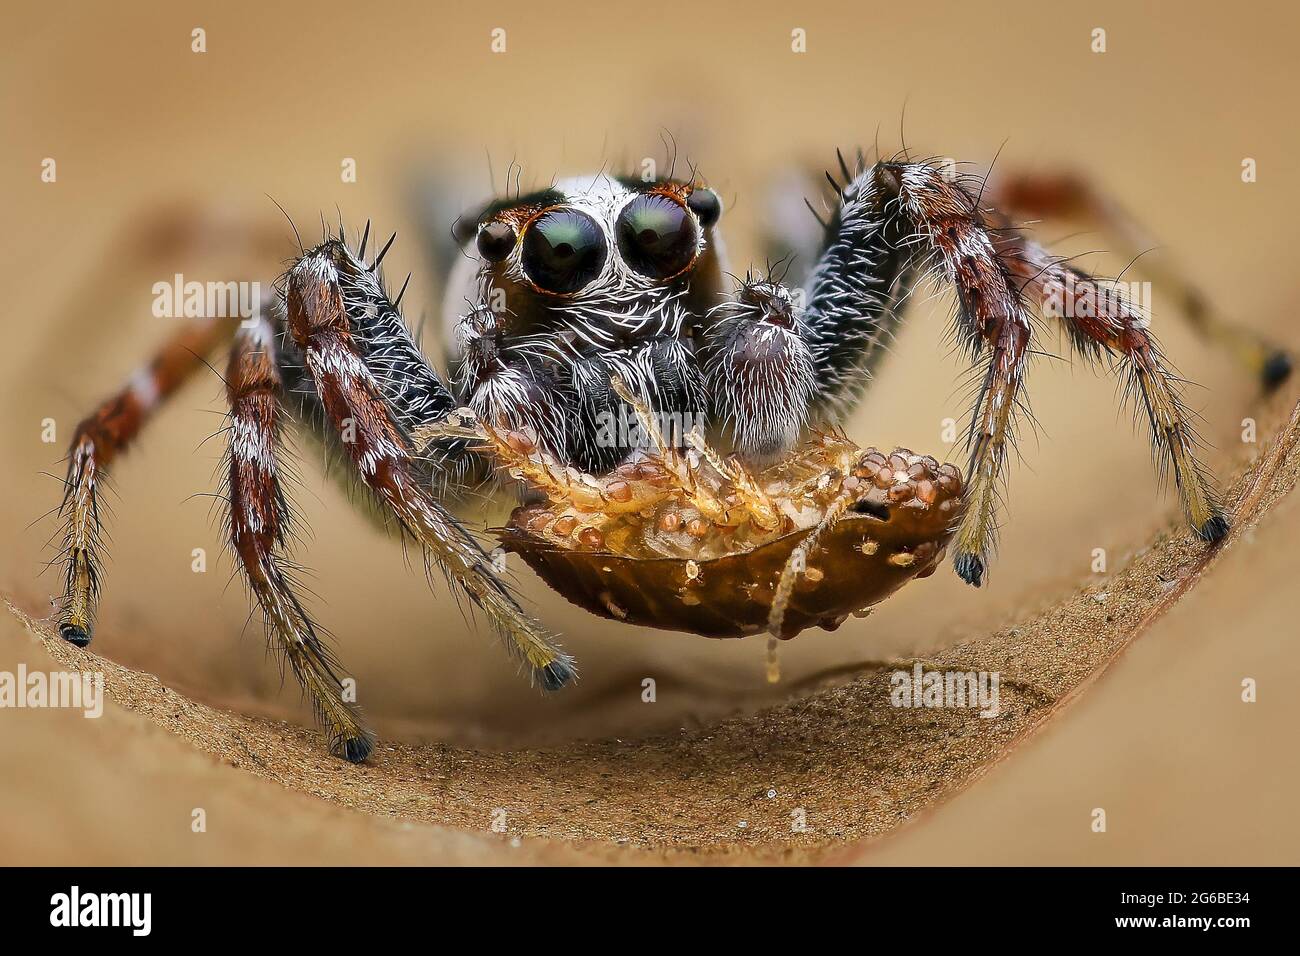 Gros plan d'une araignée sautant avec un insecte mort, Indonésie Banque D'Images